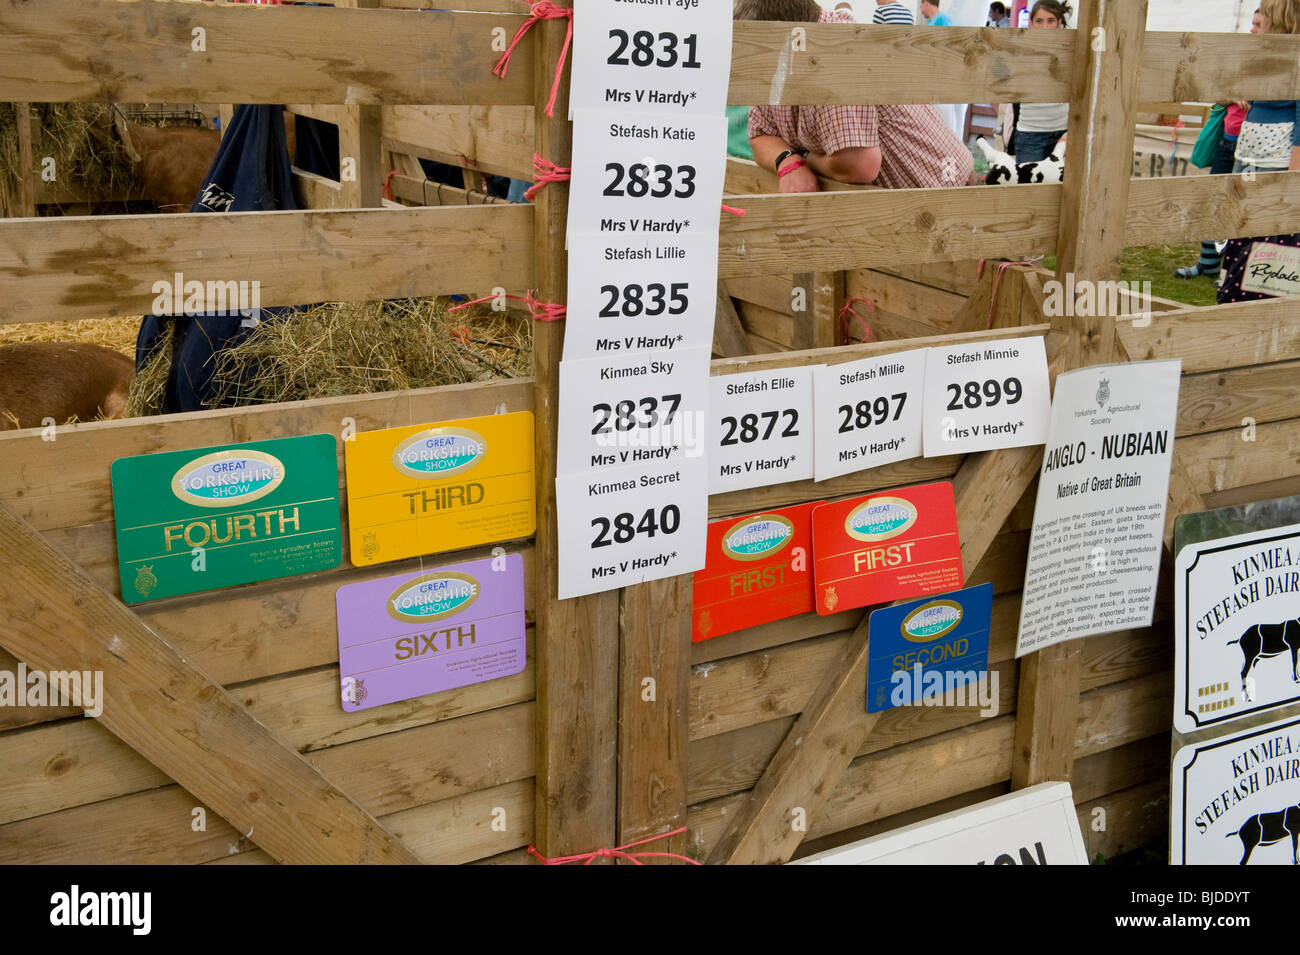 Una penna di capra al grande spettacolo dello Yorkshire, Harrogate, mostrando i certificati vinto da animali detenuti lì. Foto Stock